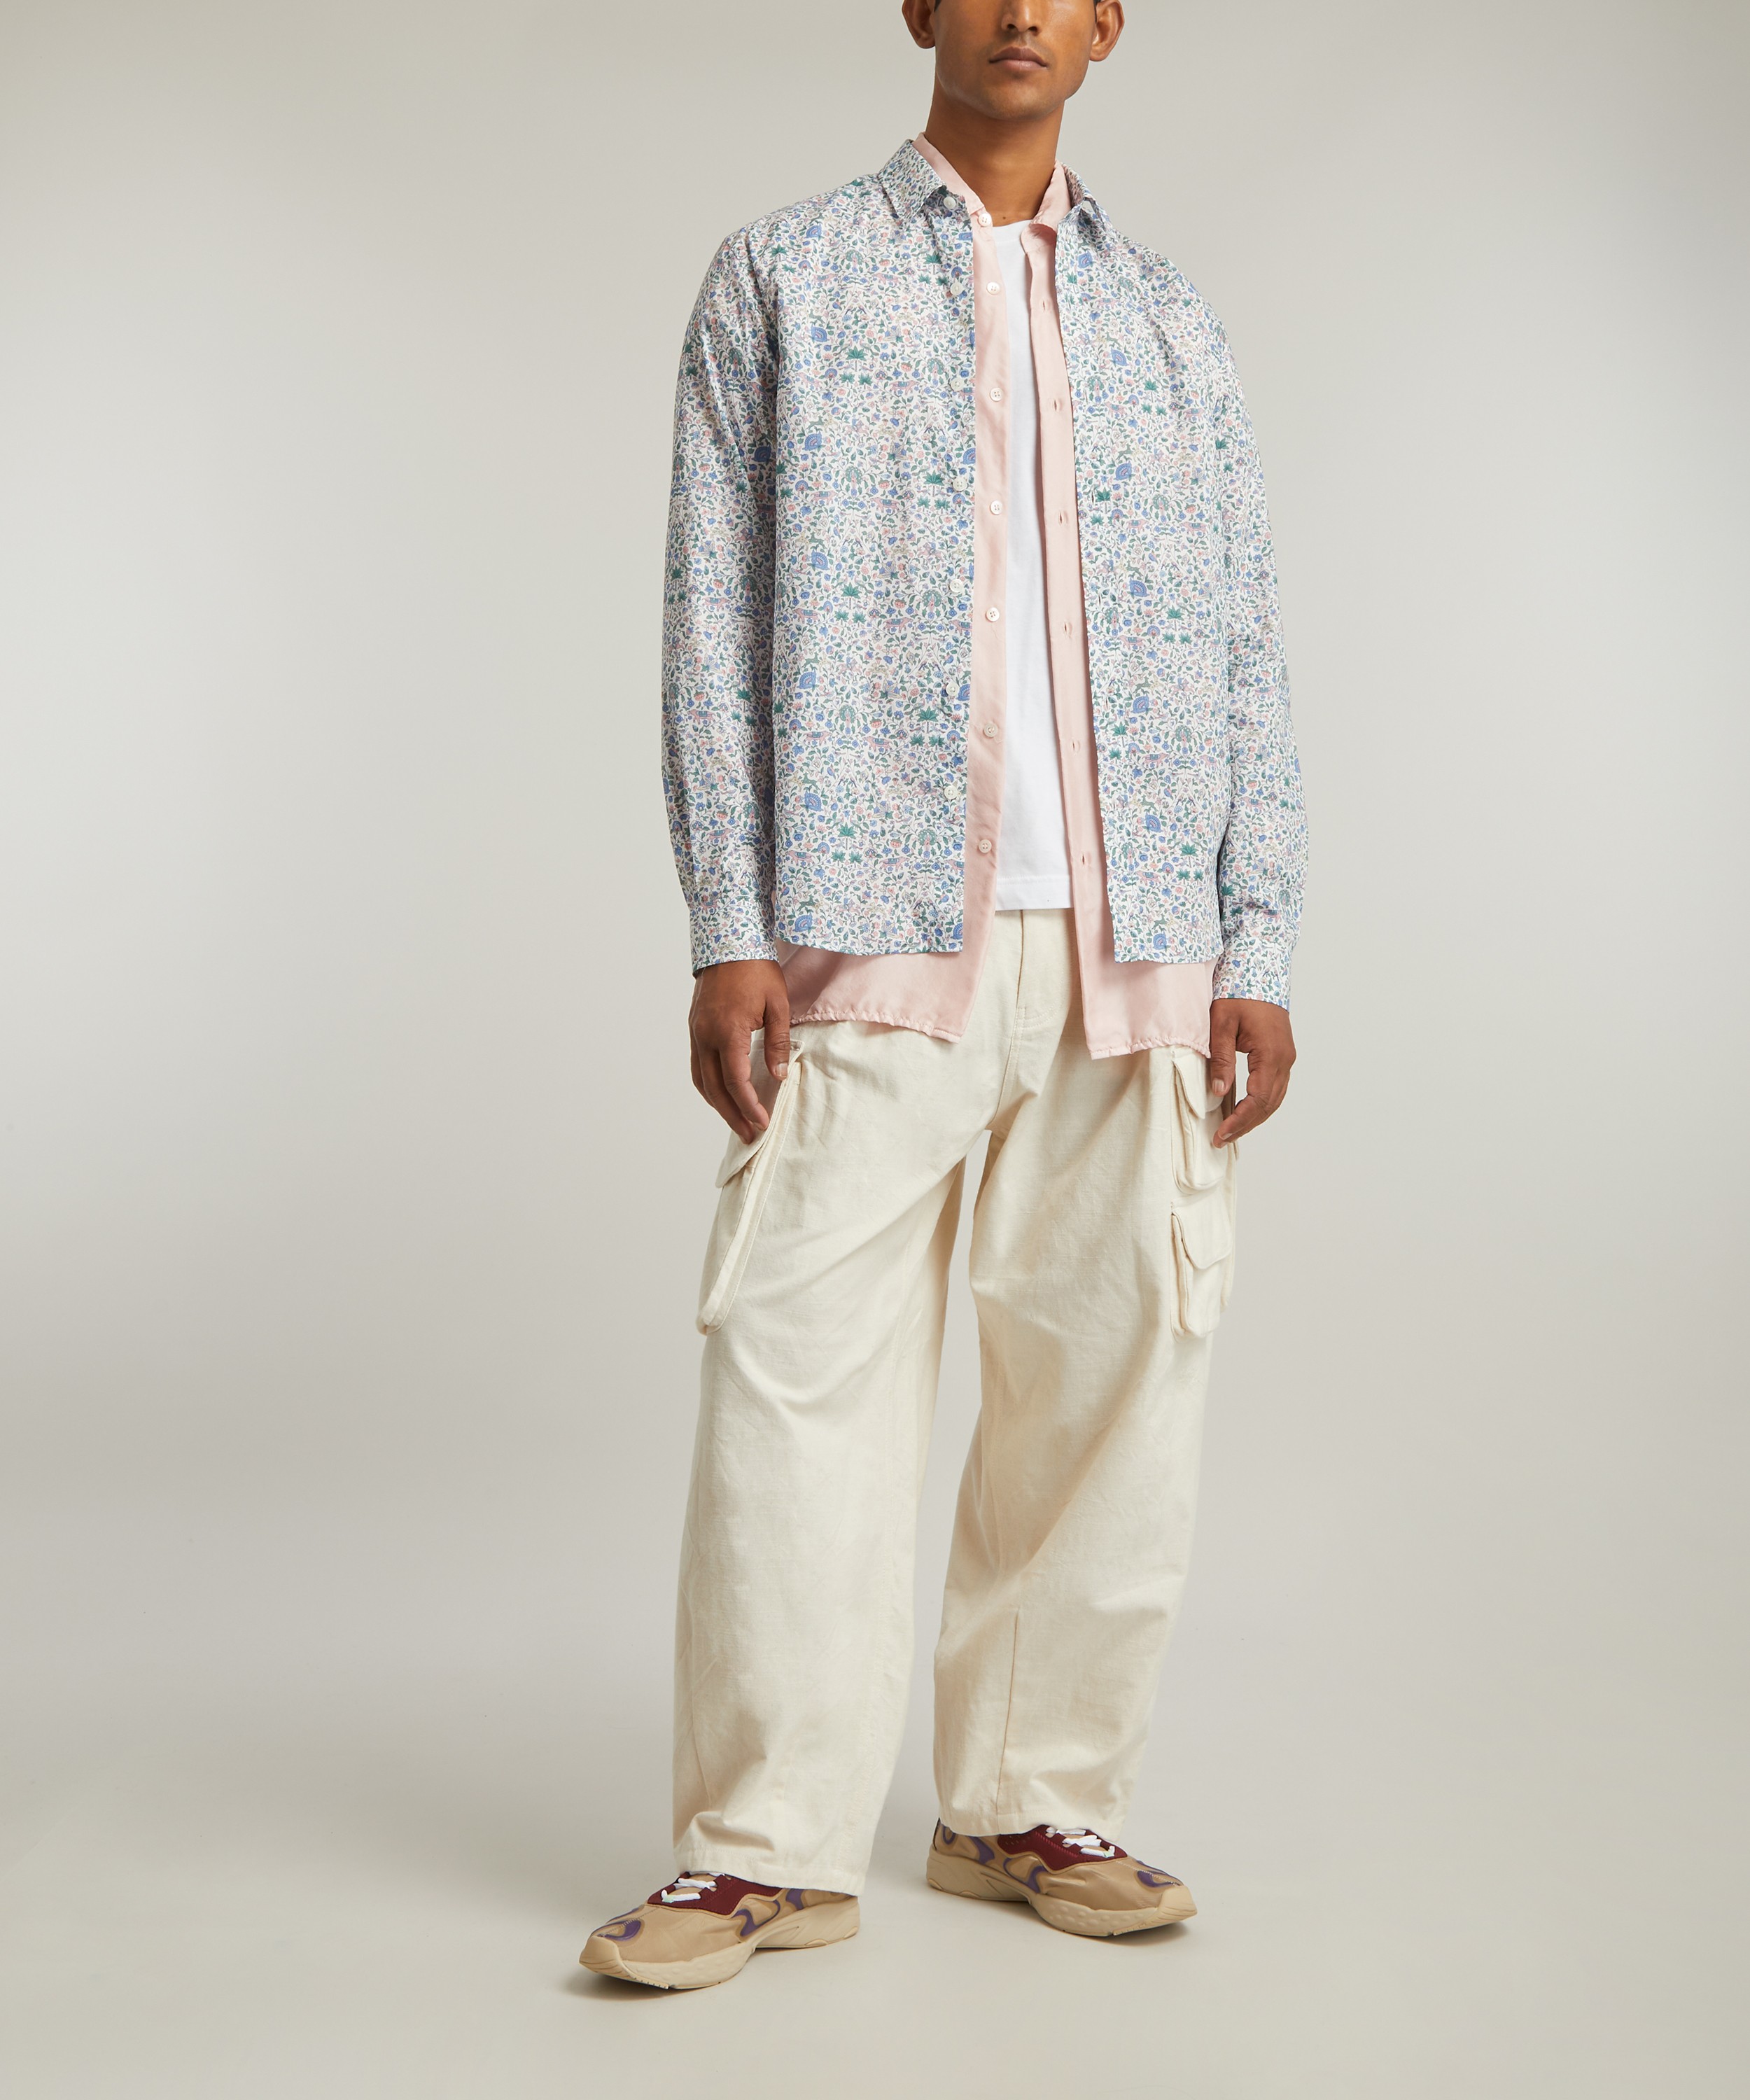 Liberty - Imran Tana Lawn™ Cotton Casual Classic Shirt image number 5